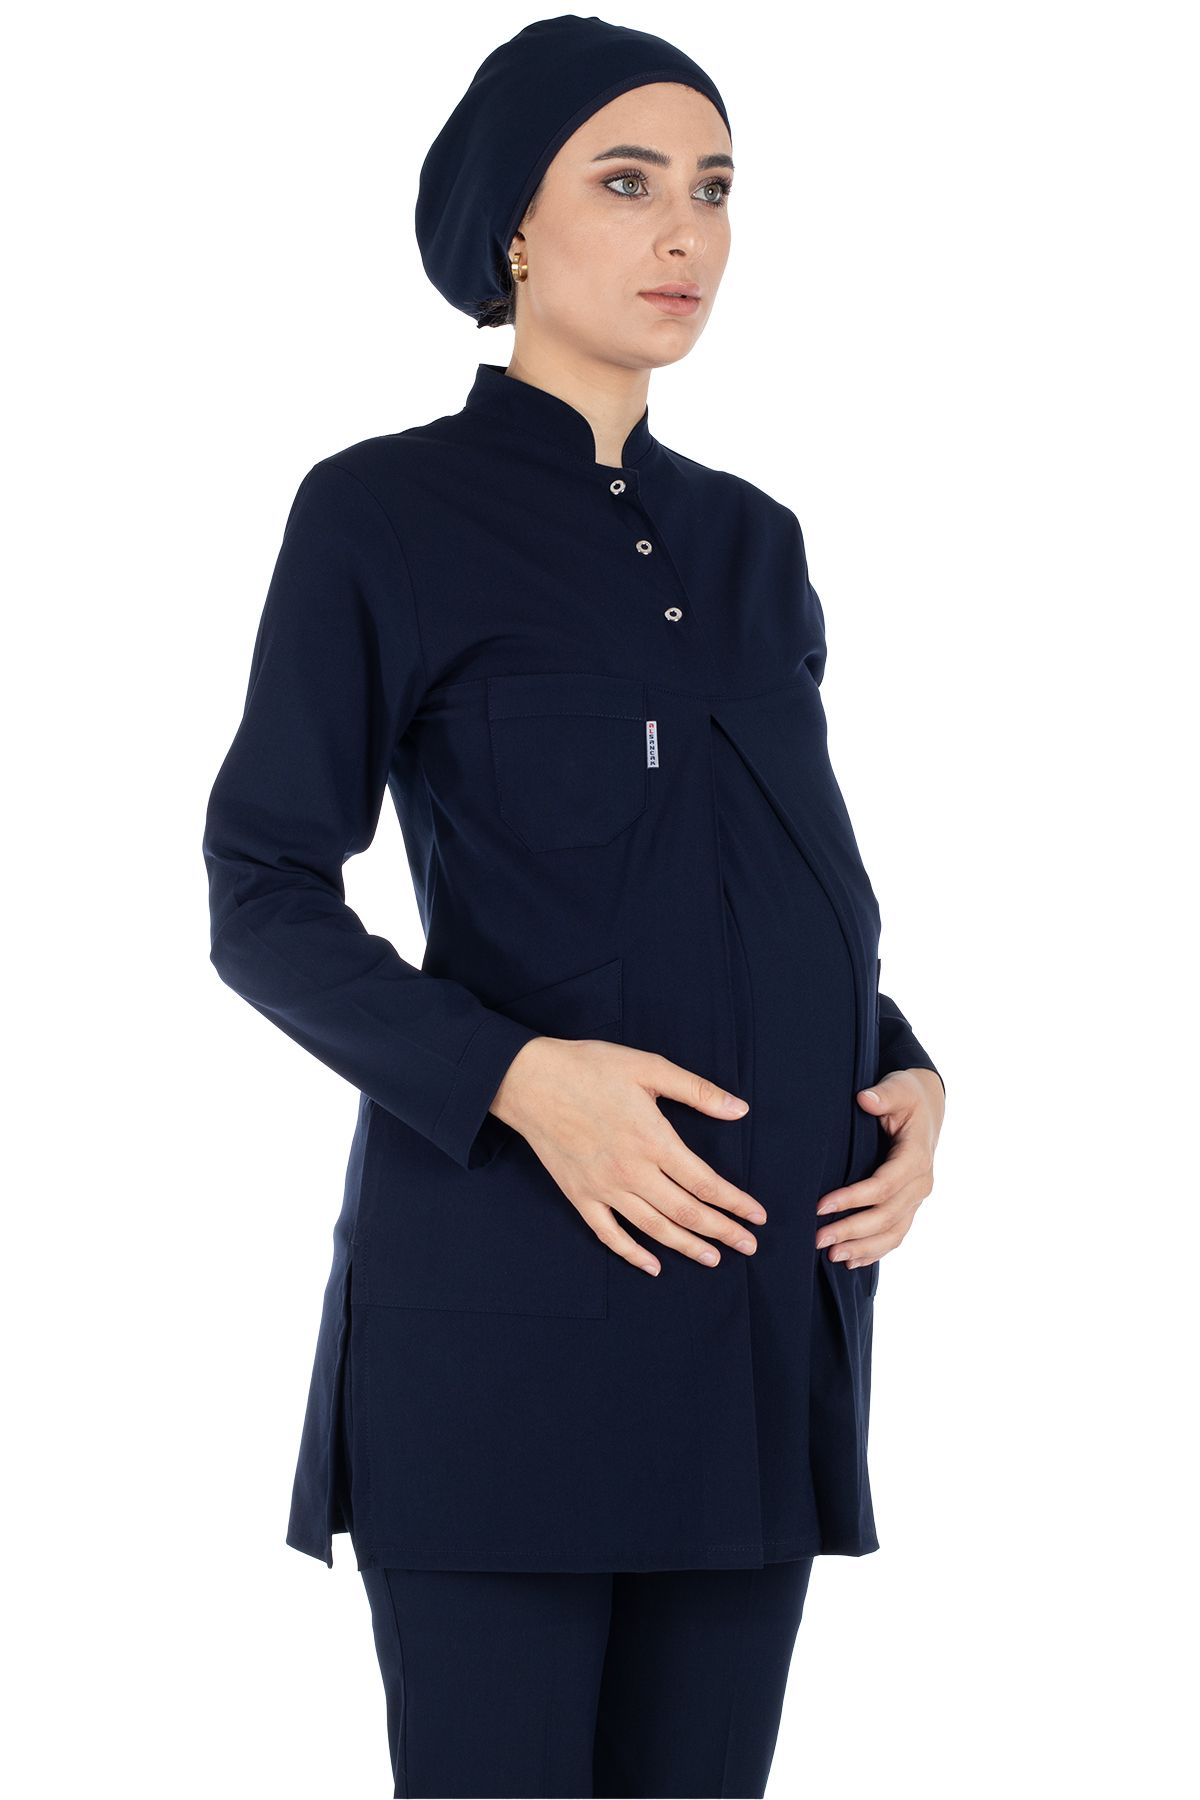 Alsancak Üniforma Lacivert Likralı İnce Hamile Tesettür Hemşire Doktor Forması Takımı